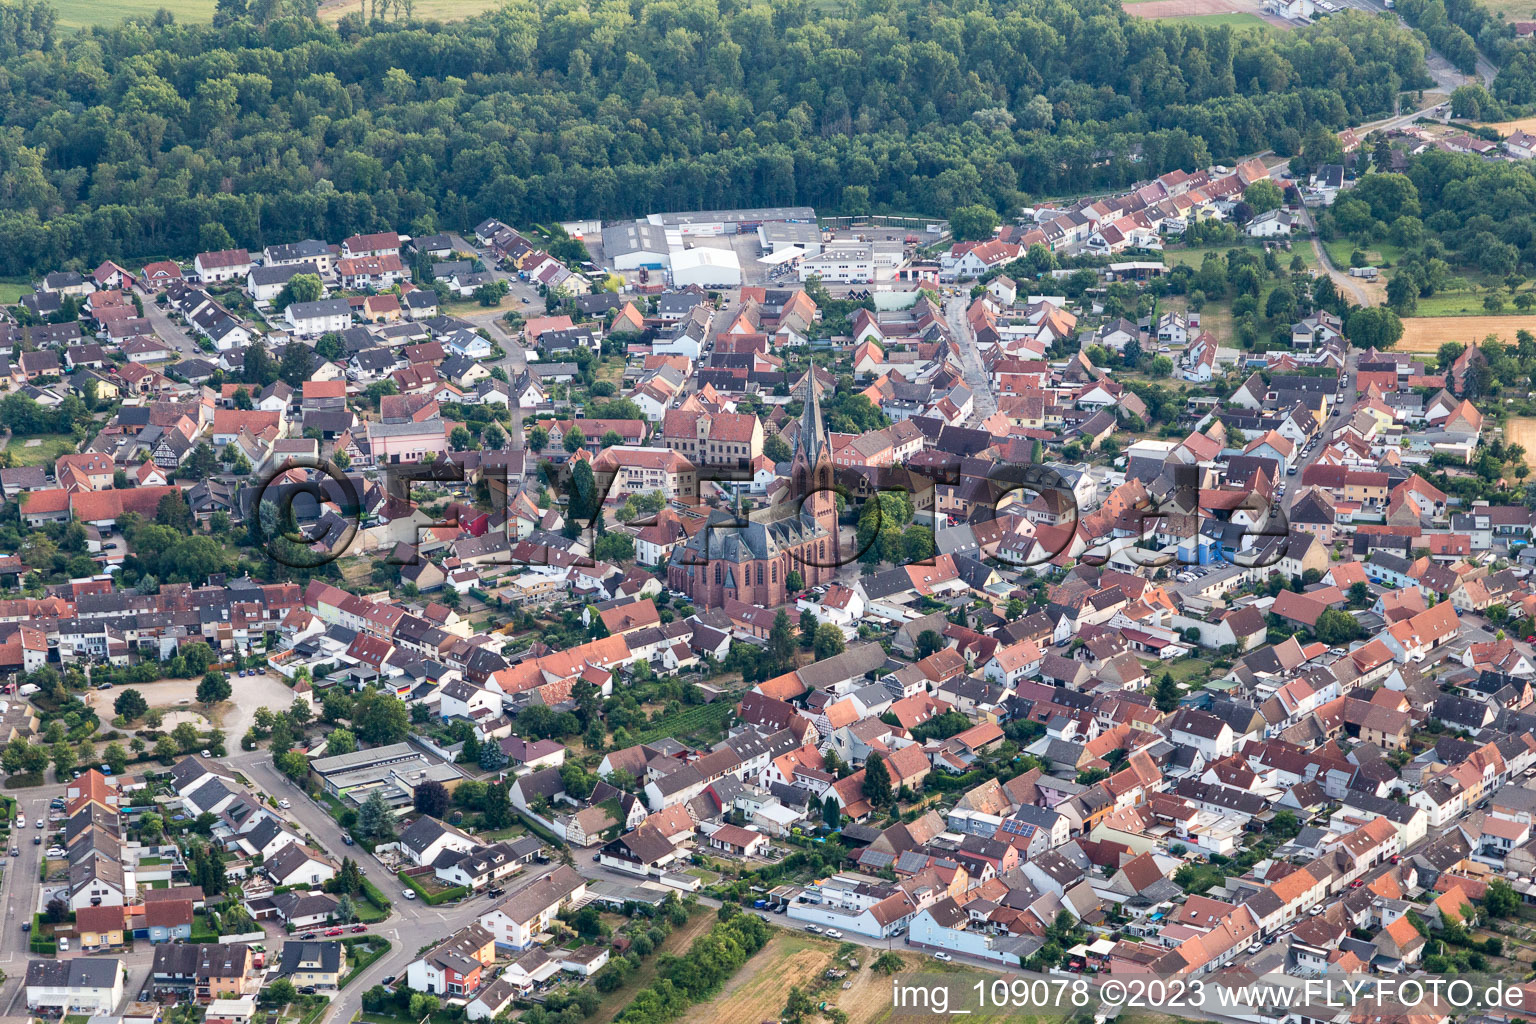 Vue aérienne de Saint-Guy du nord-ouest à le quartier Rheinsheim in Philippsburg dans le département Bade-Wurtemberg, Allemagne